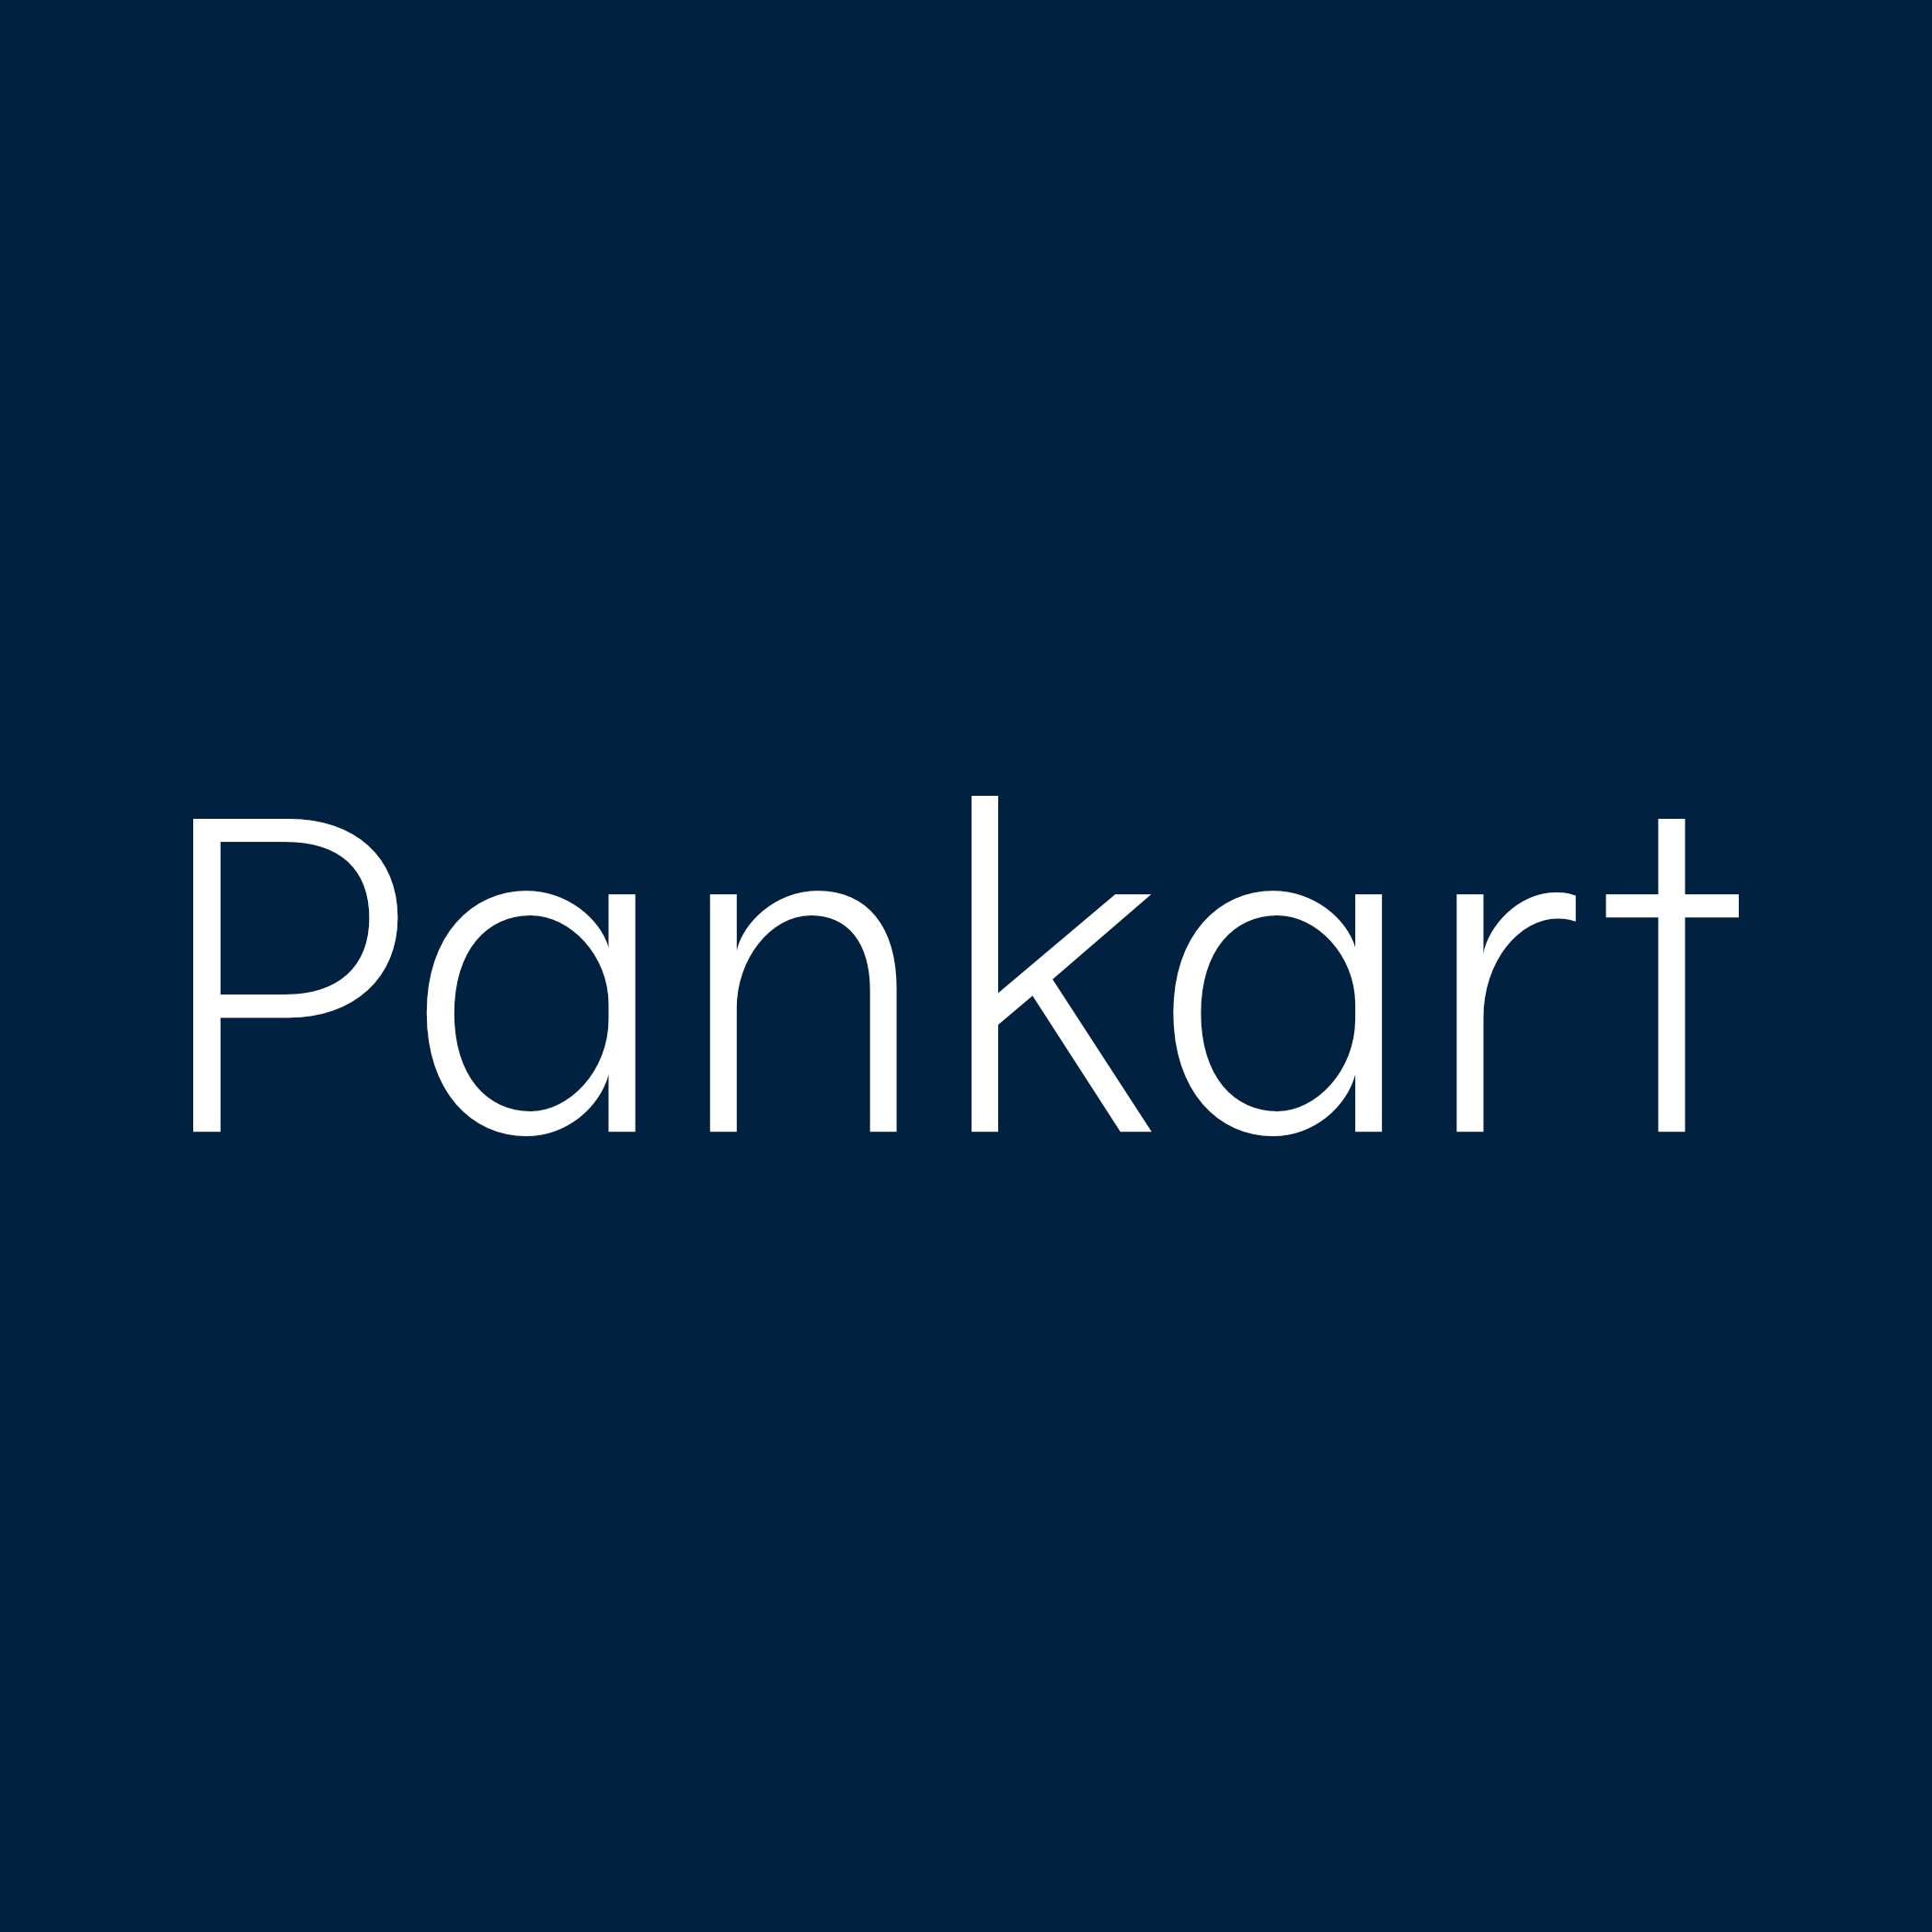 PANKART - pankart.dev - Q - Logo - dunkler Hintergrund und helle Schrift